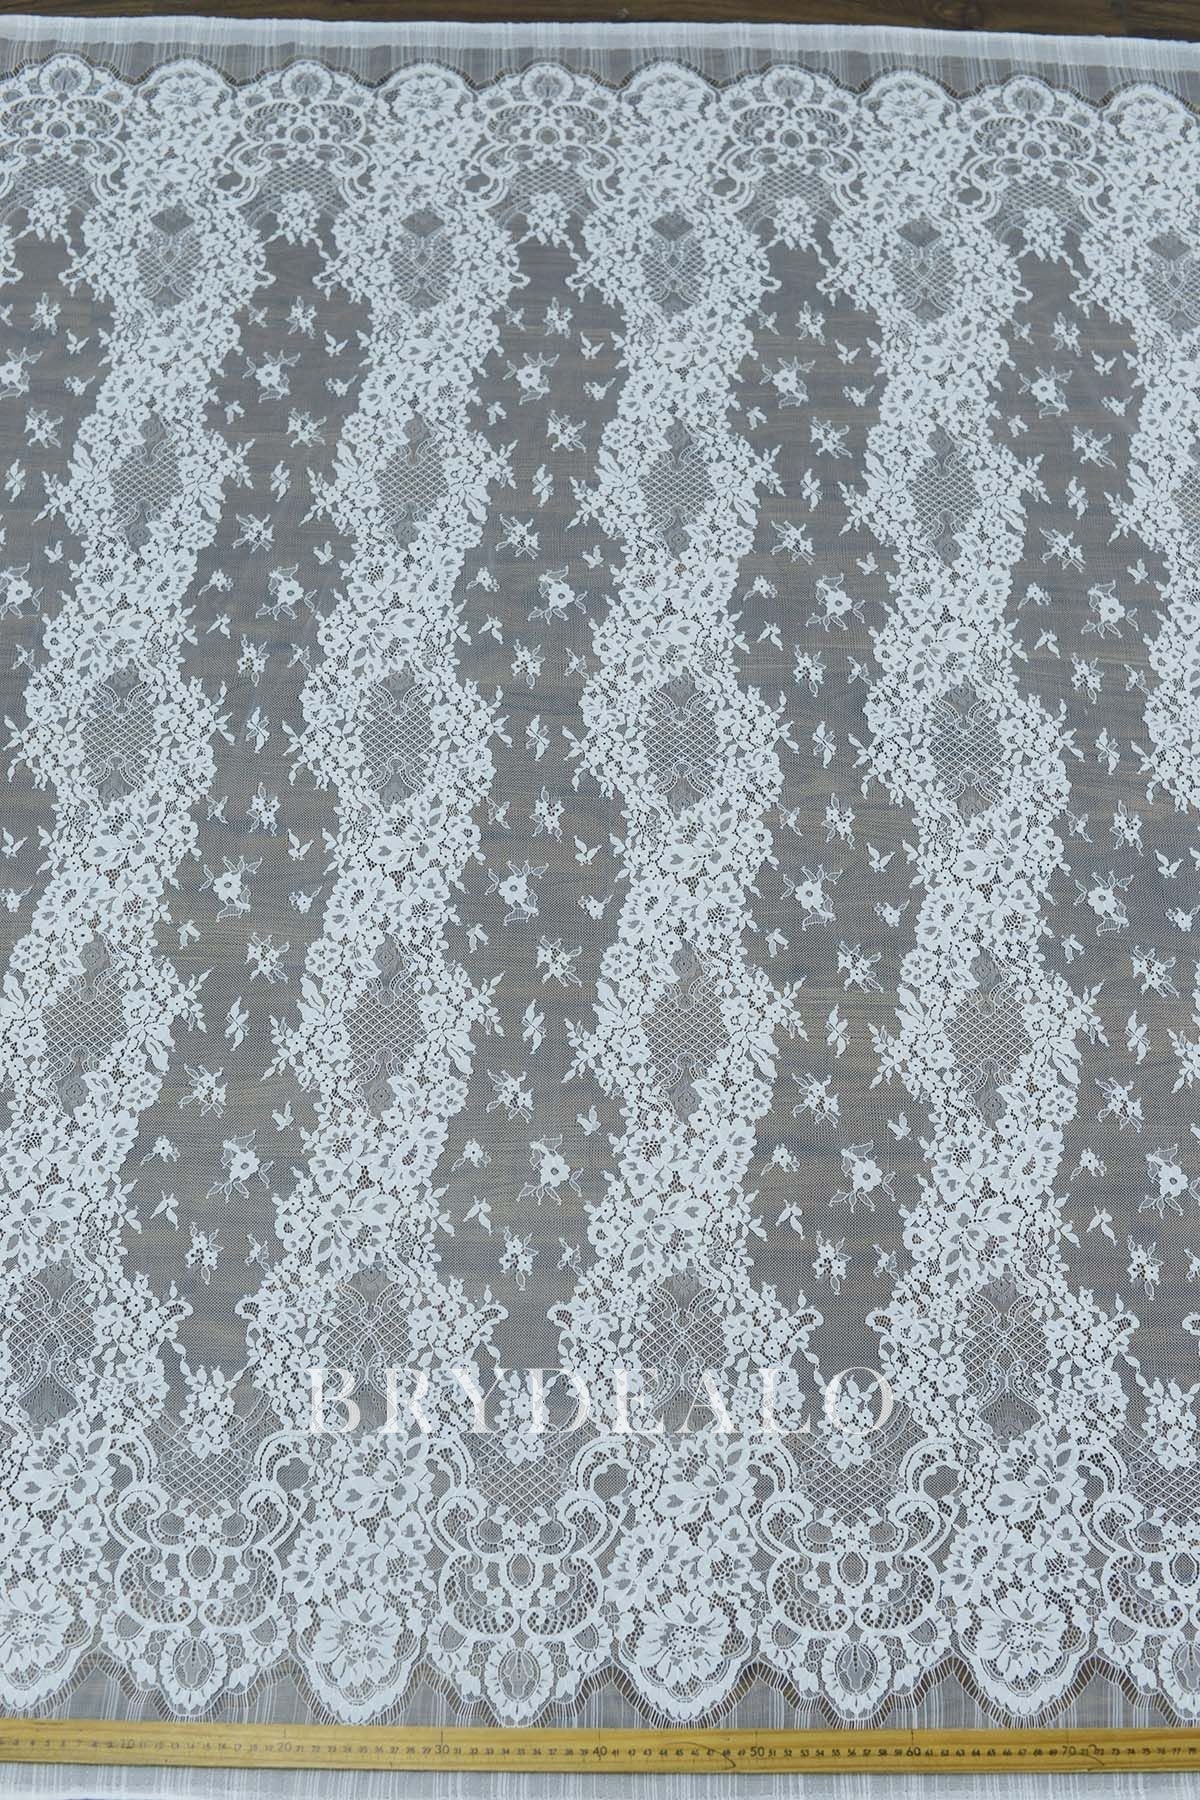 Unique Motif Corded Scallop Lace Fabric